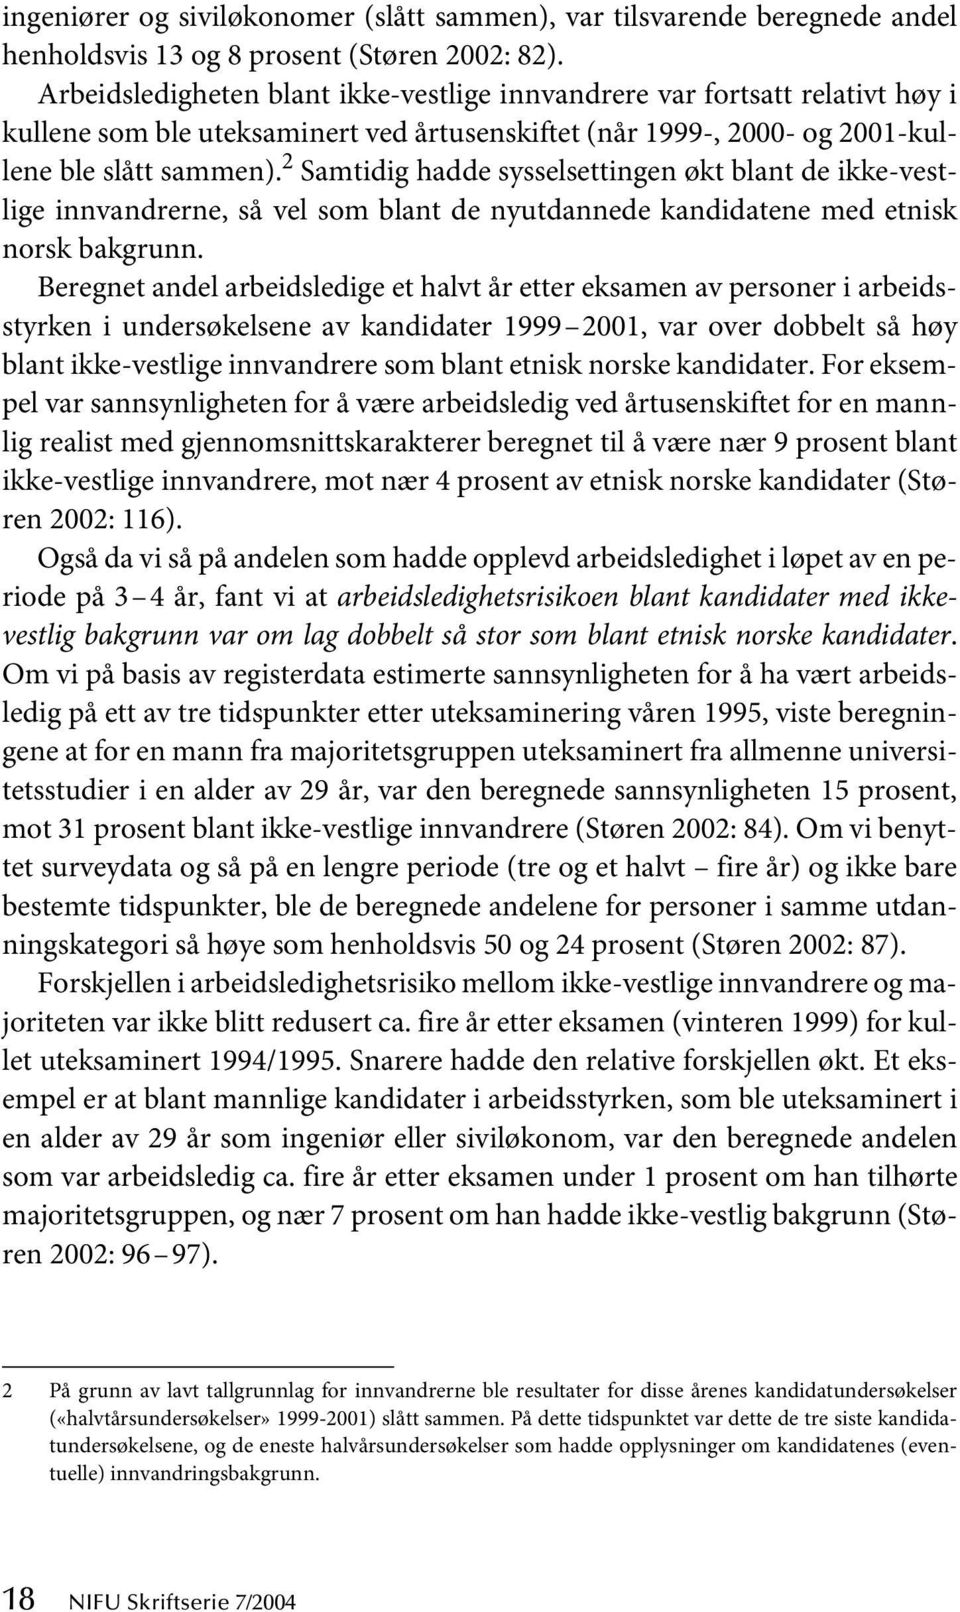 2 Samtidig hadde sysselsettingen økt blant de ikke-vestlige innvandrerne, så vel som blant de nyutdannede kandidatene med etnisk norsk bakgrunn.